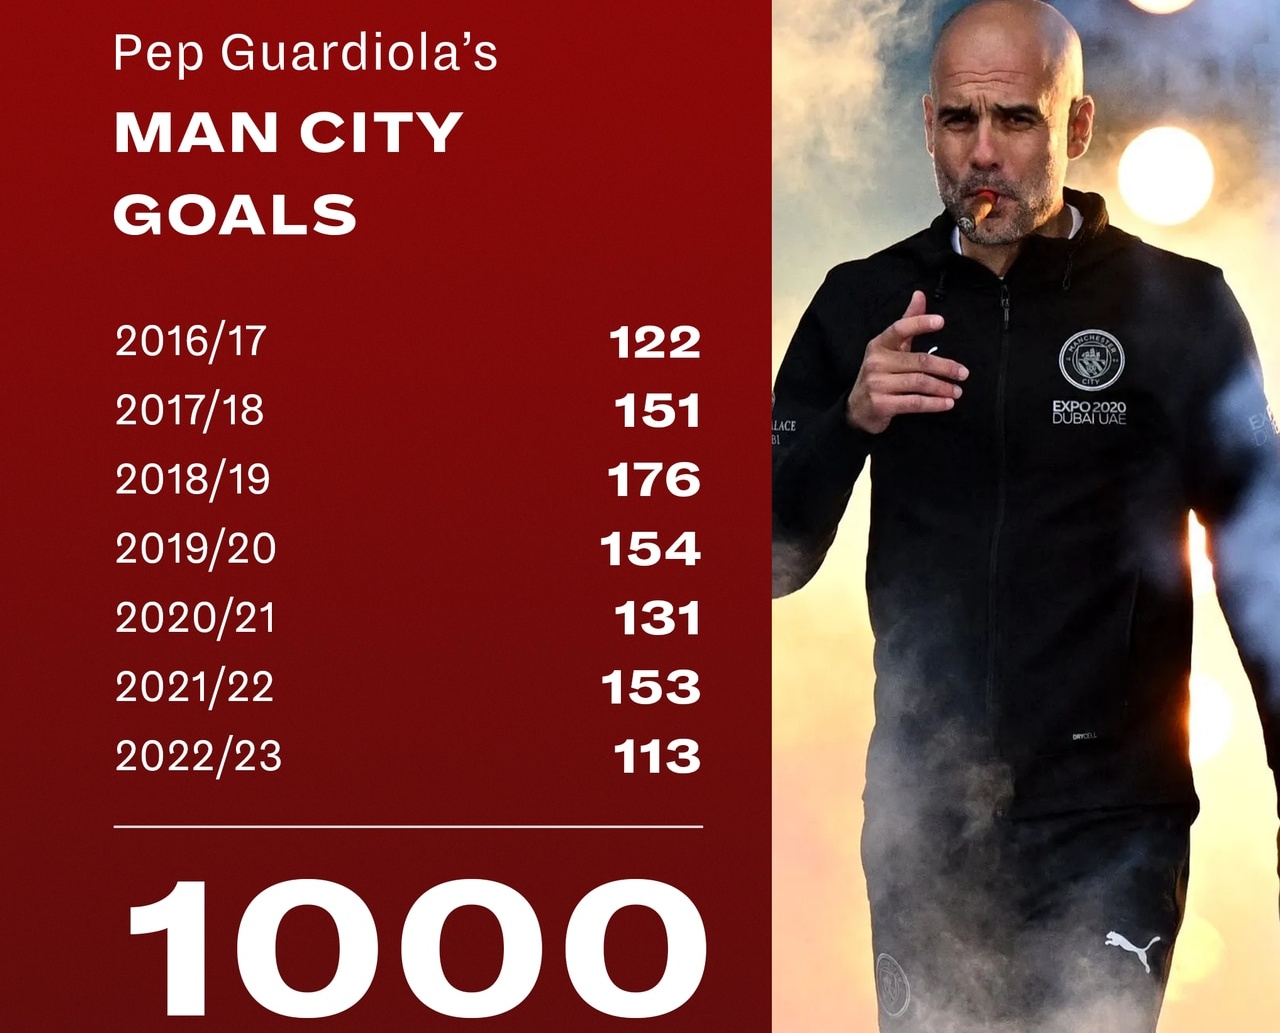 Manchester City reach 1,000 goals under Pep Guardiola - Bóng Đá